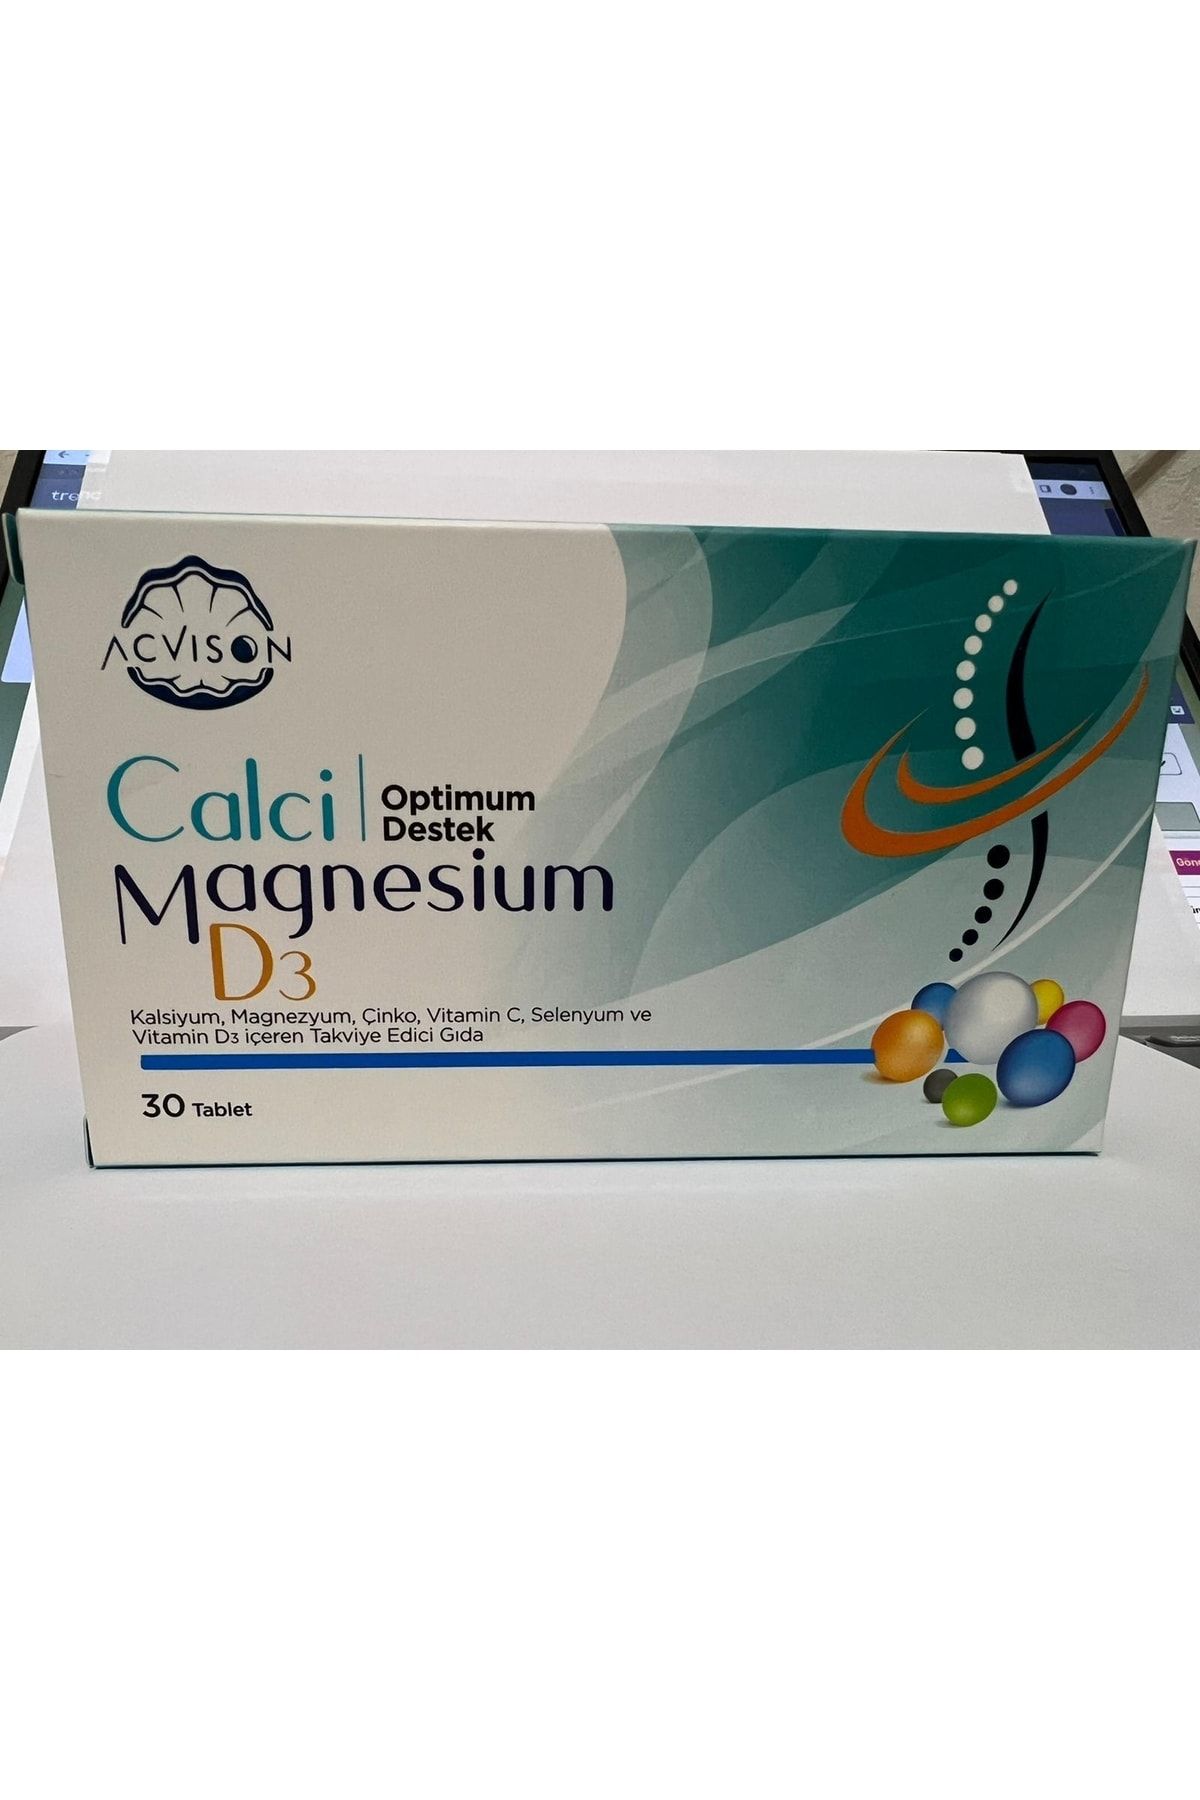 Acvison Calci Magnesium D3 Tablet